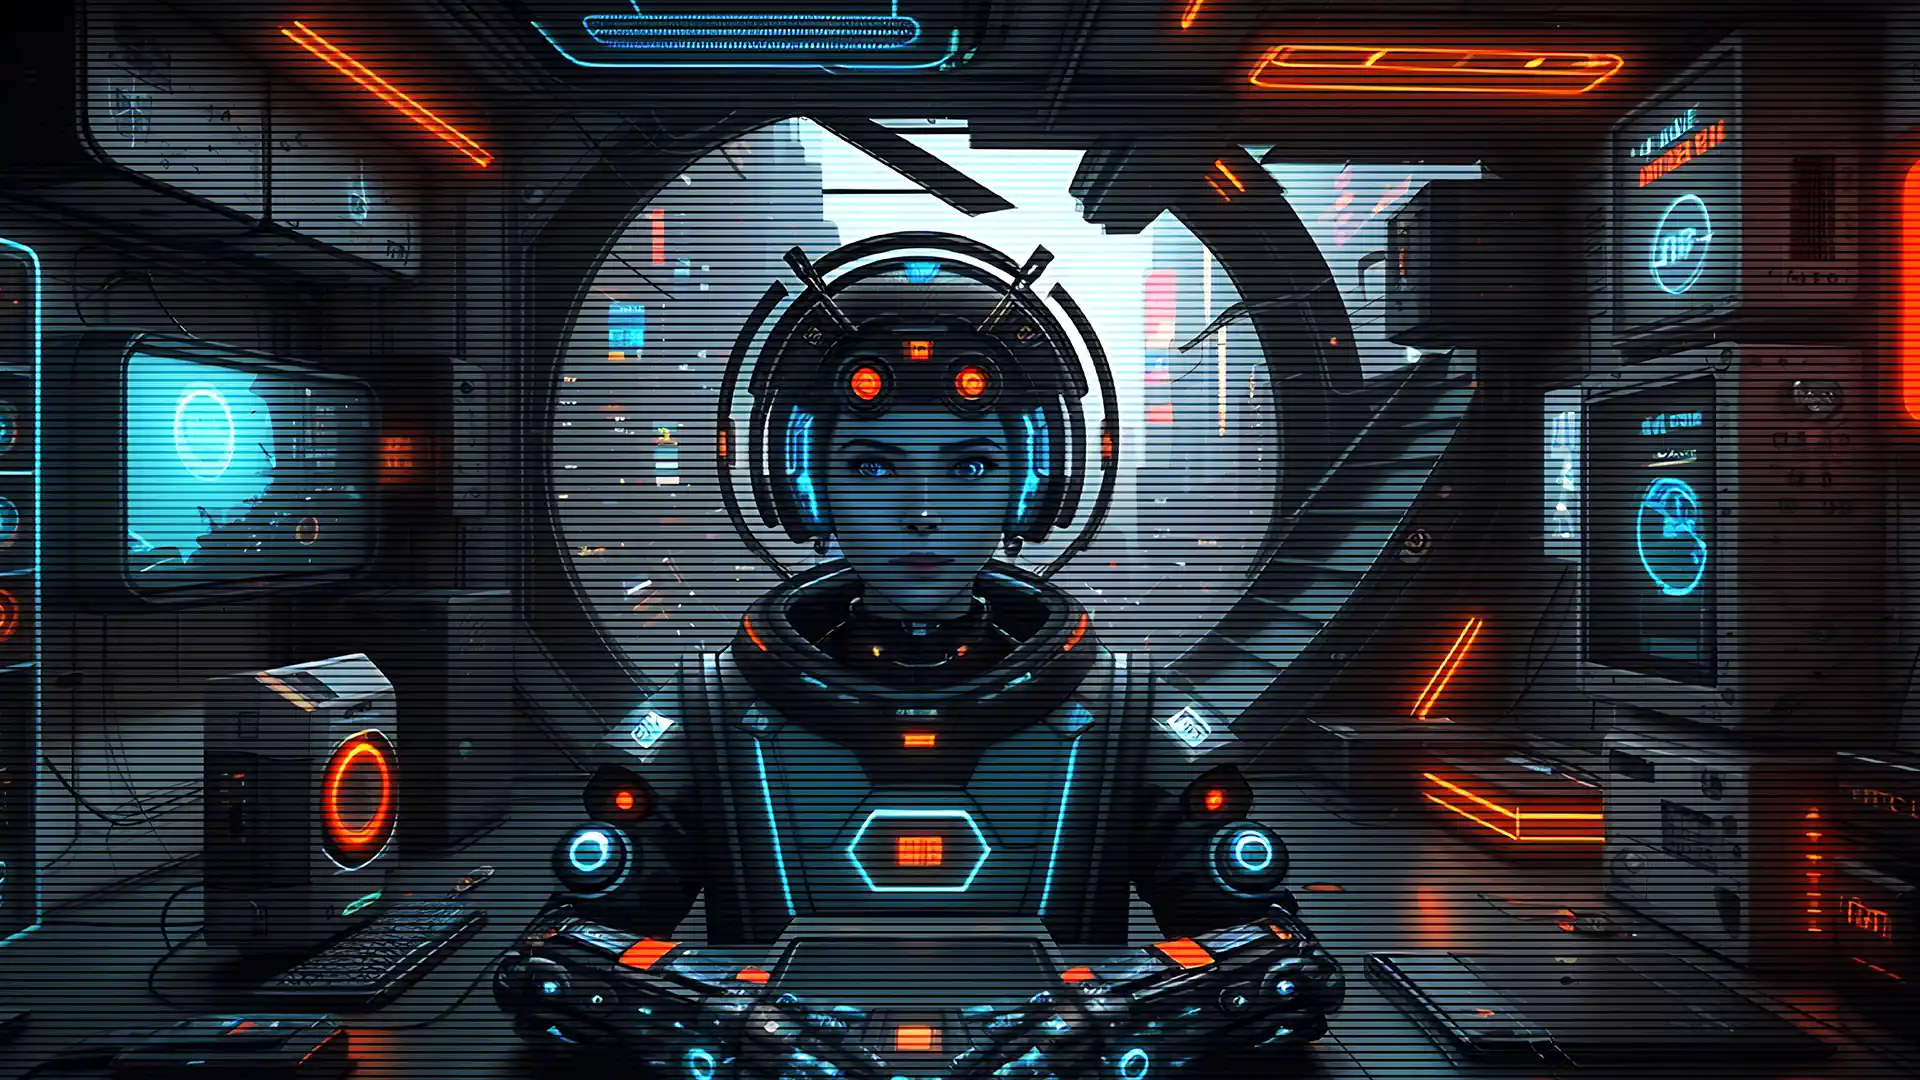 I Won’t Let Go: Cyborgs Concept Video (AI)